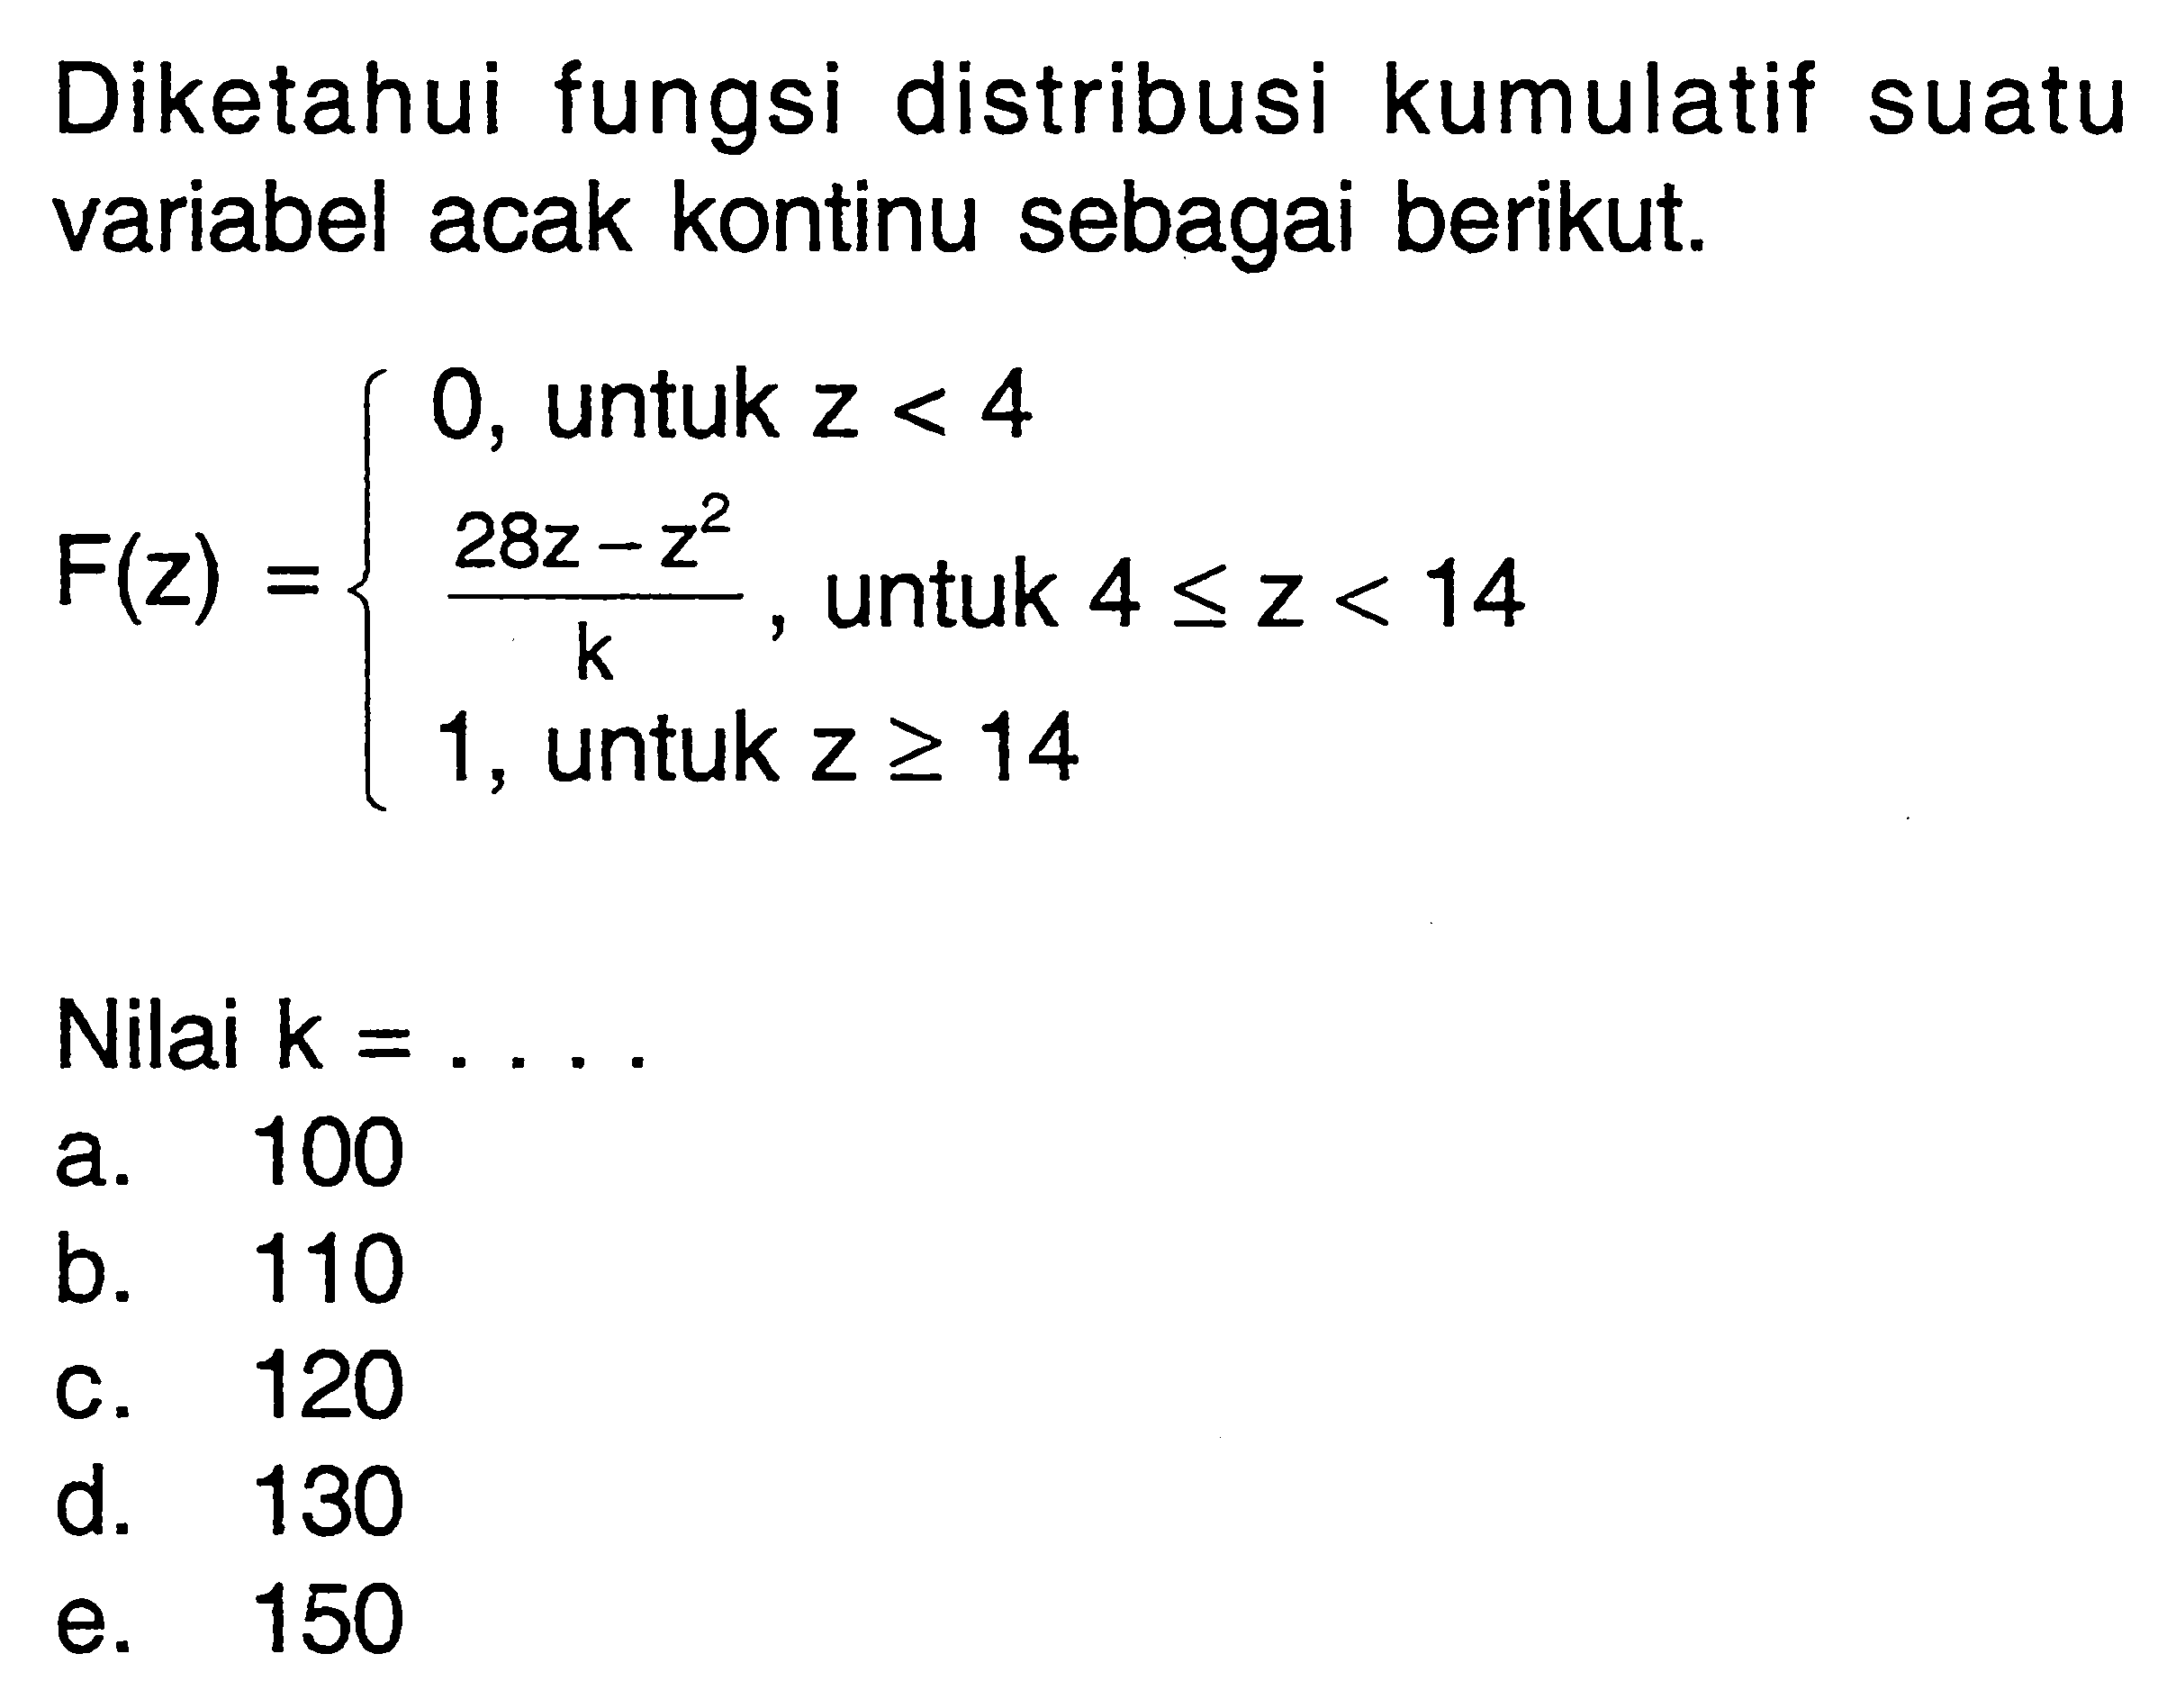 Diketahui fungsi distribusi kumulatif suatu variabel acak kontinu sebagai berikut.F(z)={0, untuk z<4 (28z-z^2)/k, untuk 4<=z<14 1, untuk z>=14Nilai  (k)=.... 